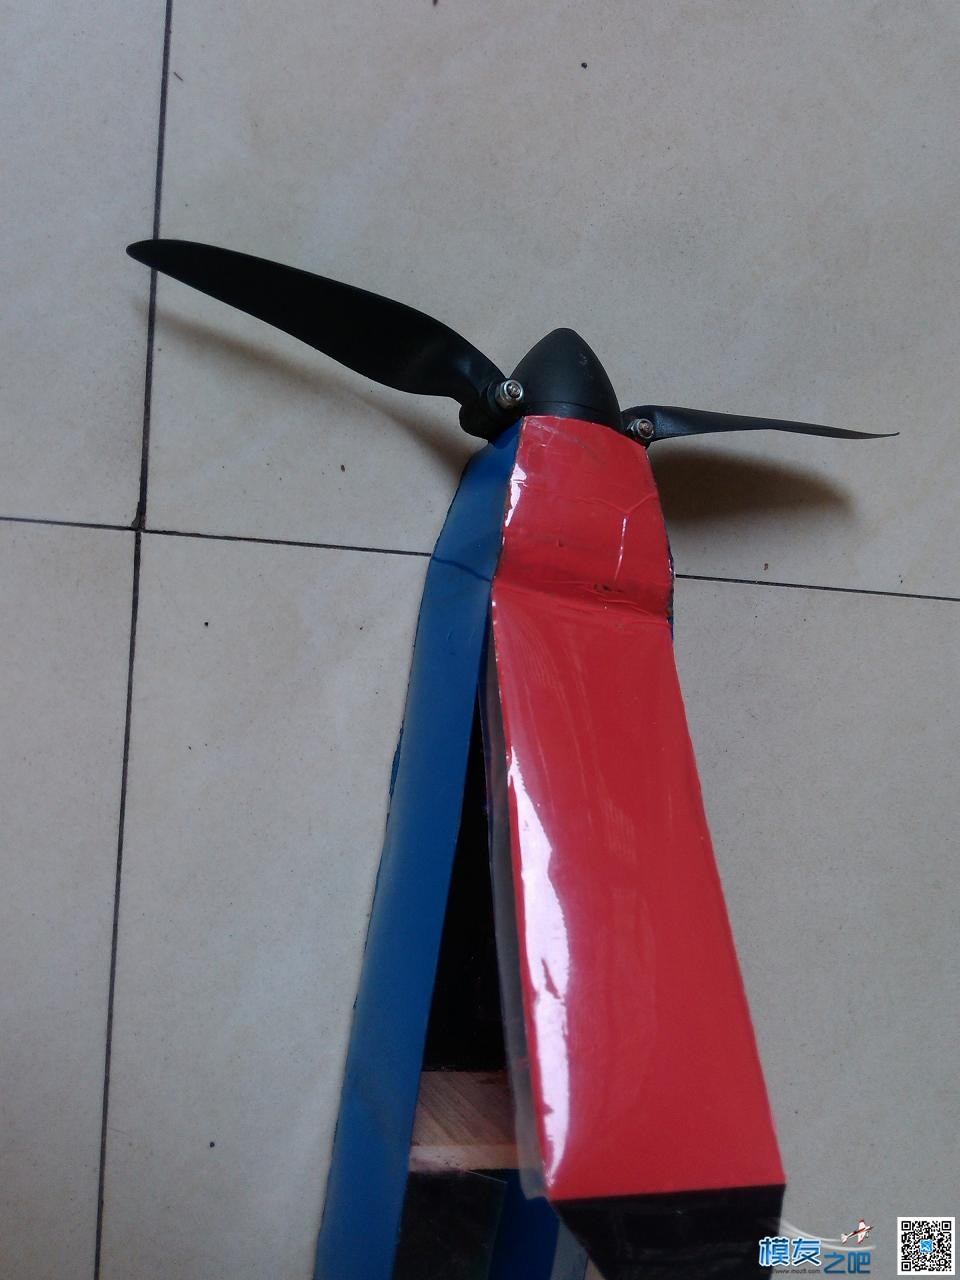 用瓶子折纸法制作滑翔机机头机身。已完成。老鸟别笑。.... 碳纤维,滑翔机,制作,专业 作者:cyb2688 4988 